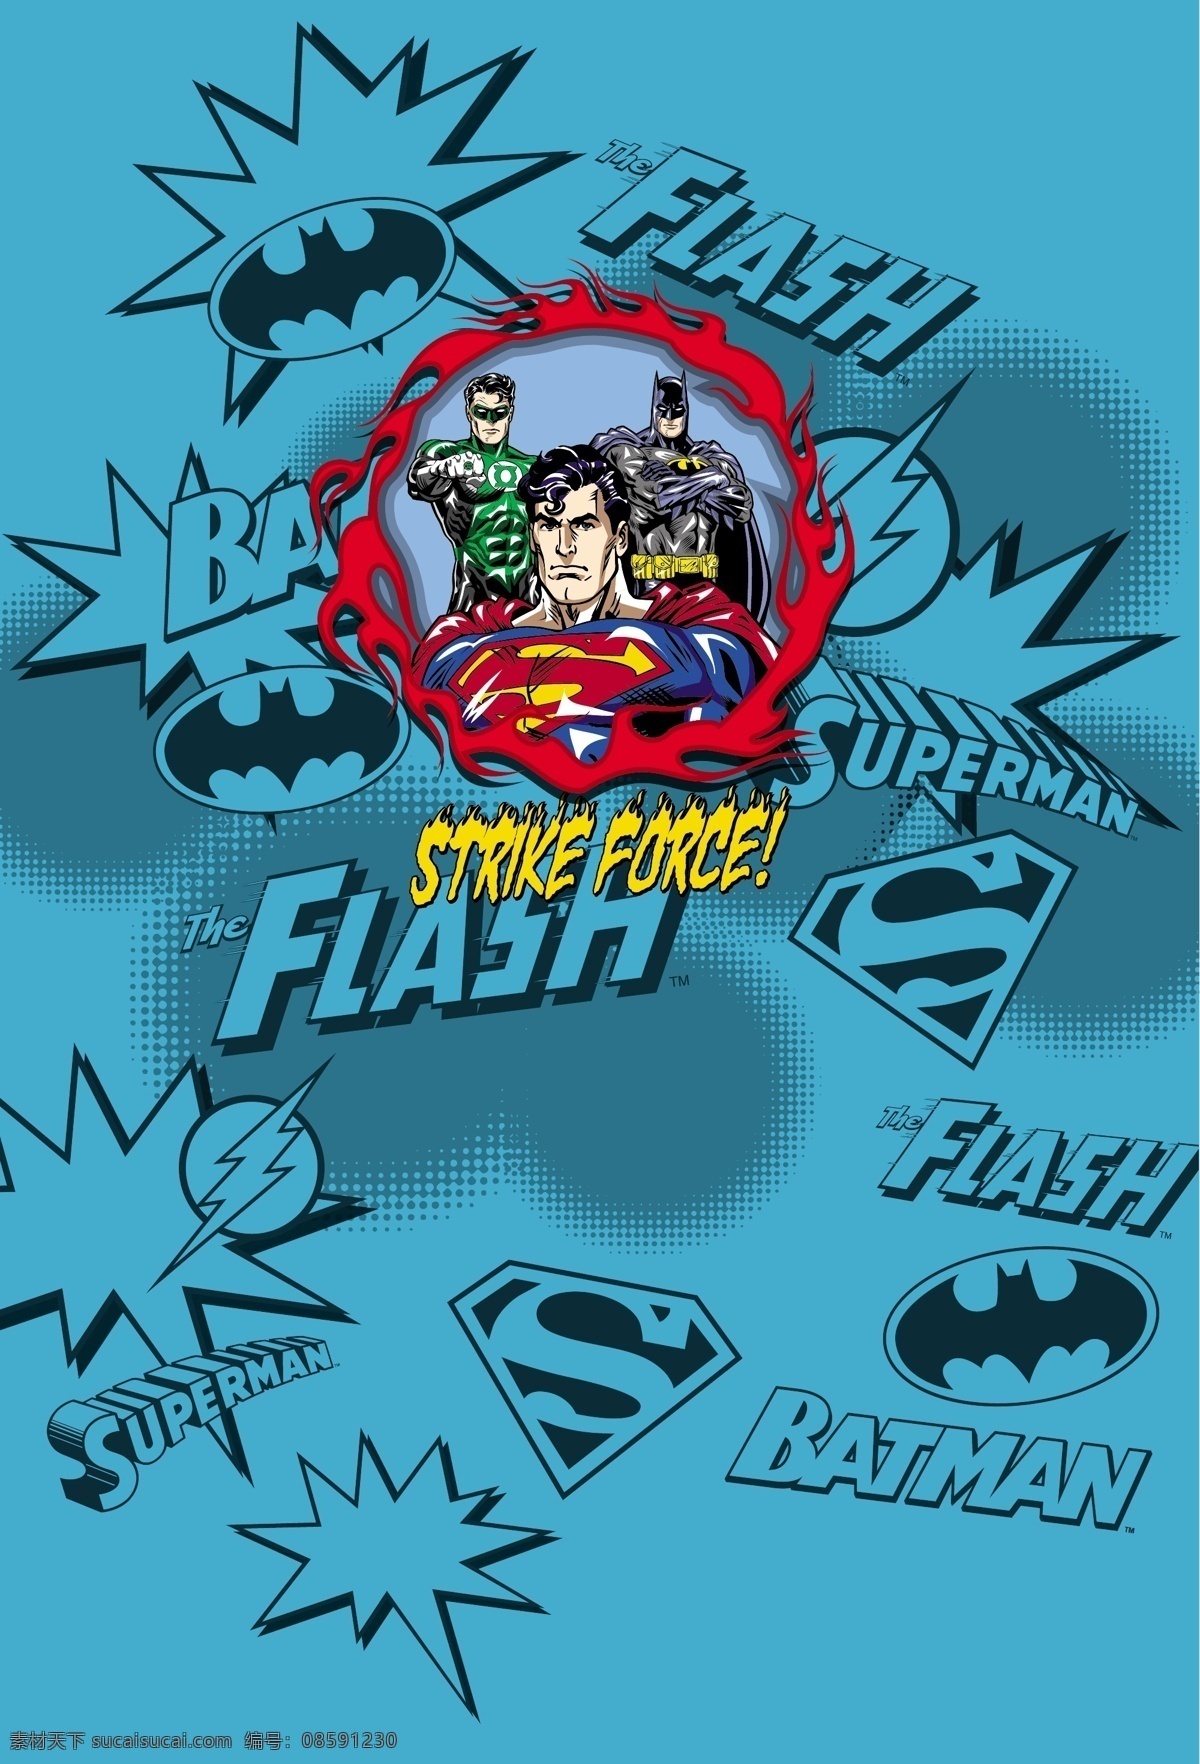 超人英雄 超人 superman 蝙蝠侠 batman 闪电侠 flash 华纳 dc漫画 超级英雄 英雄联盟 卡通形象 其他人物 矢量人物 矢量